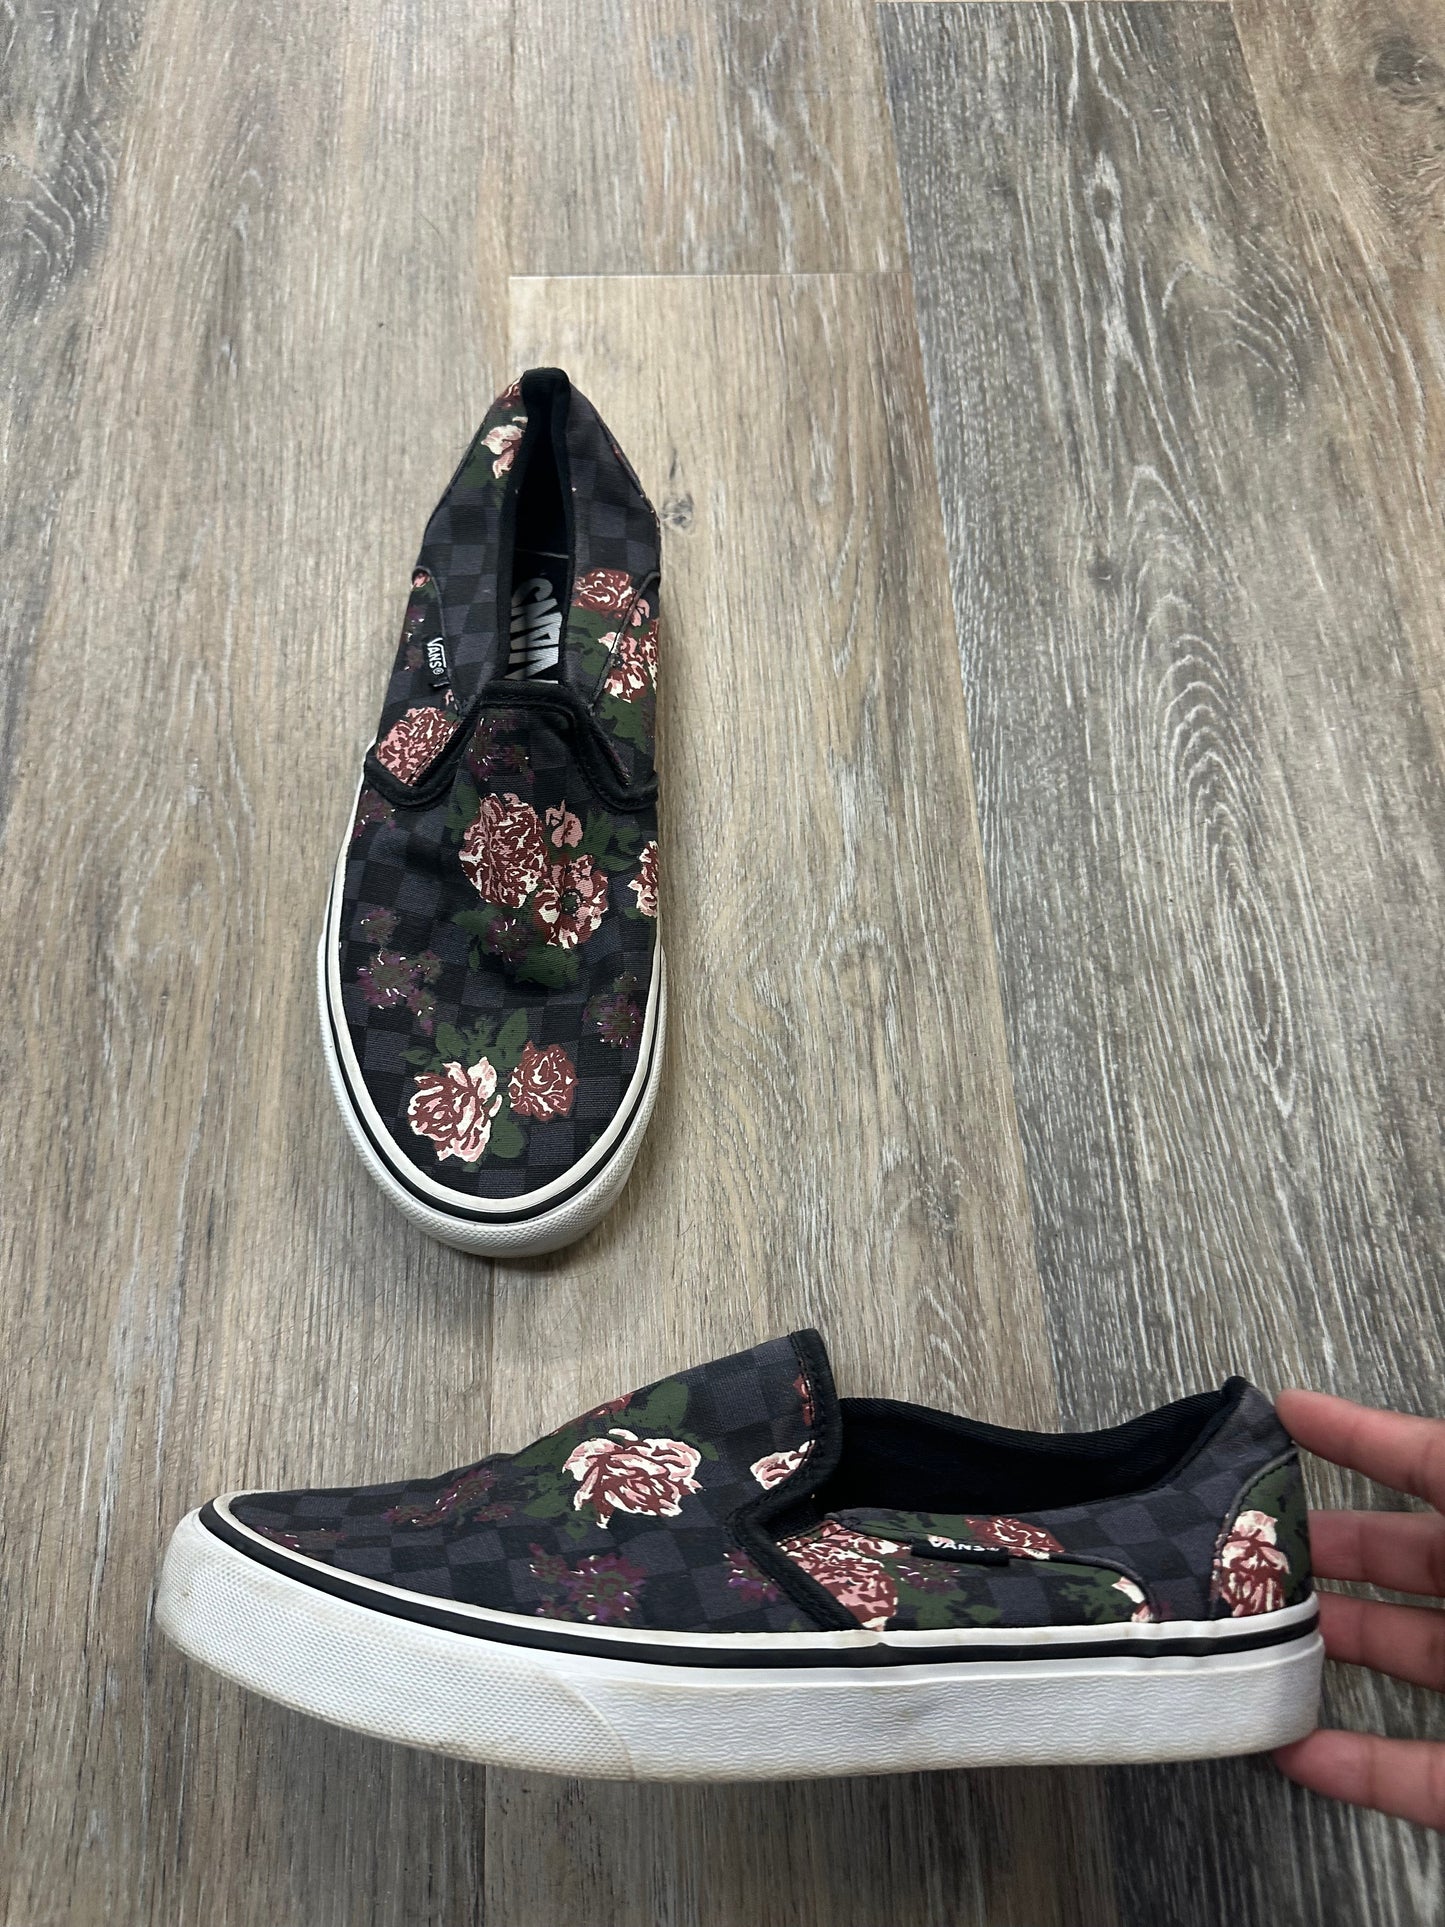 Floral Print Shoes Flats Vans, Size 8